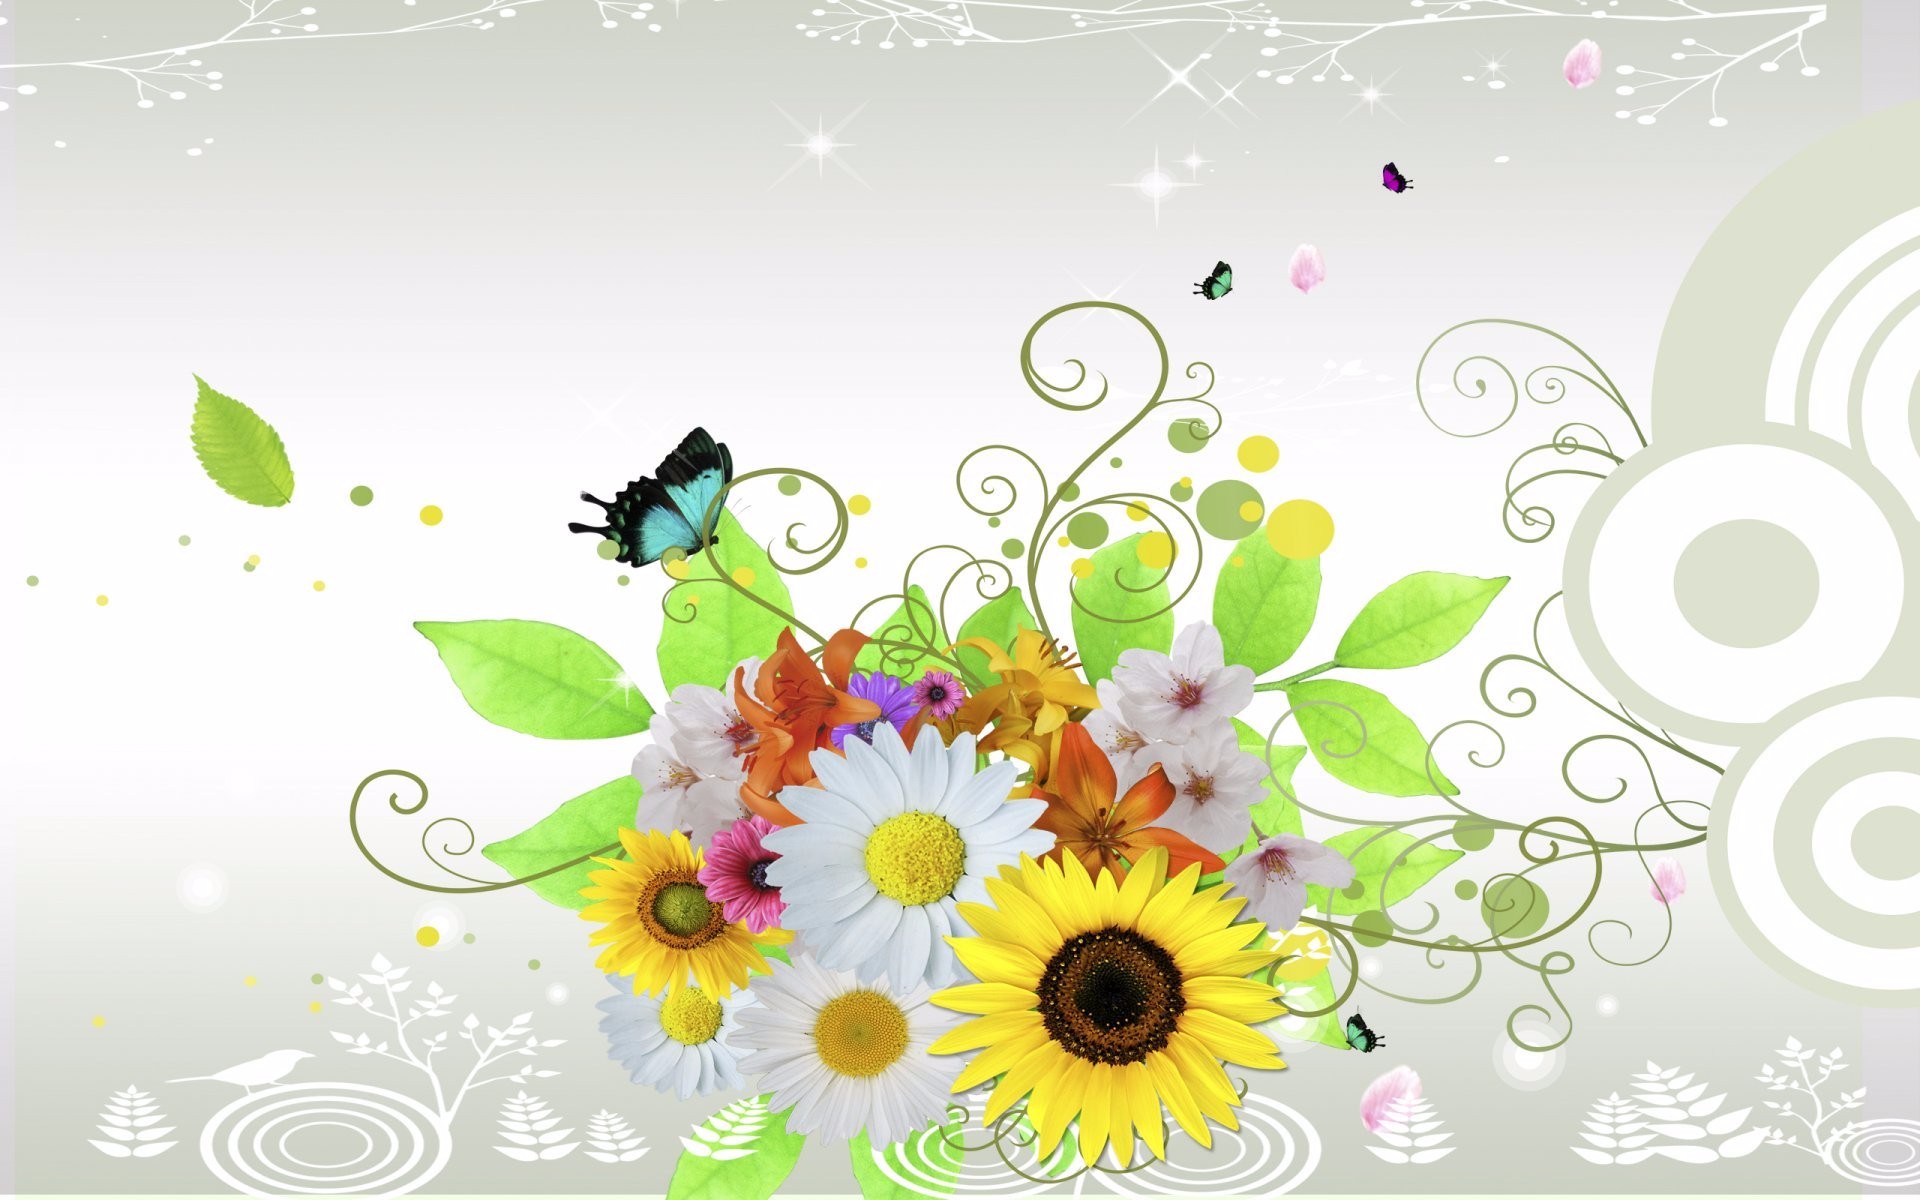 Скачать обои бесплатно Вектор, Цветок, Бабочка, Красочный, Абстрактные картинка на рабочий стол ПК